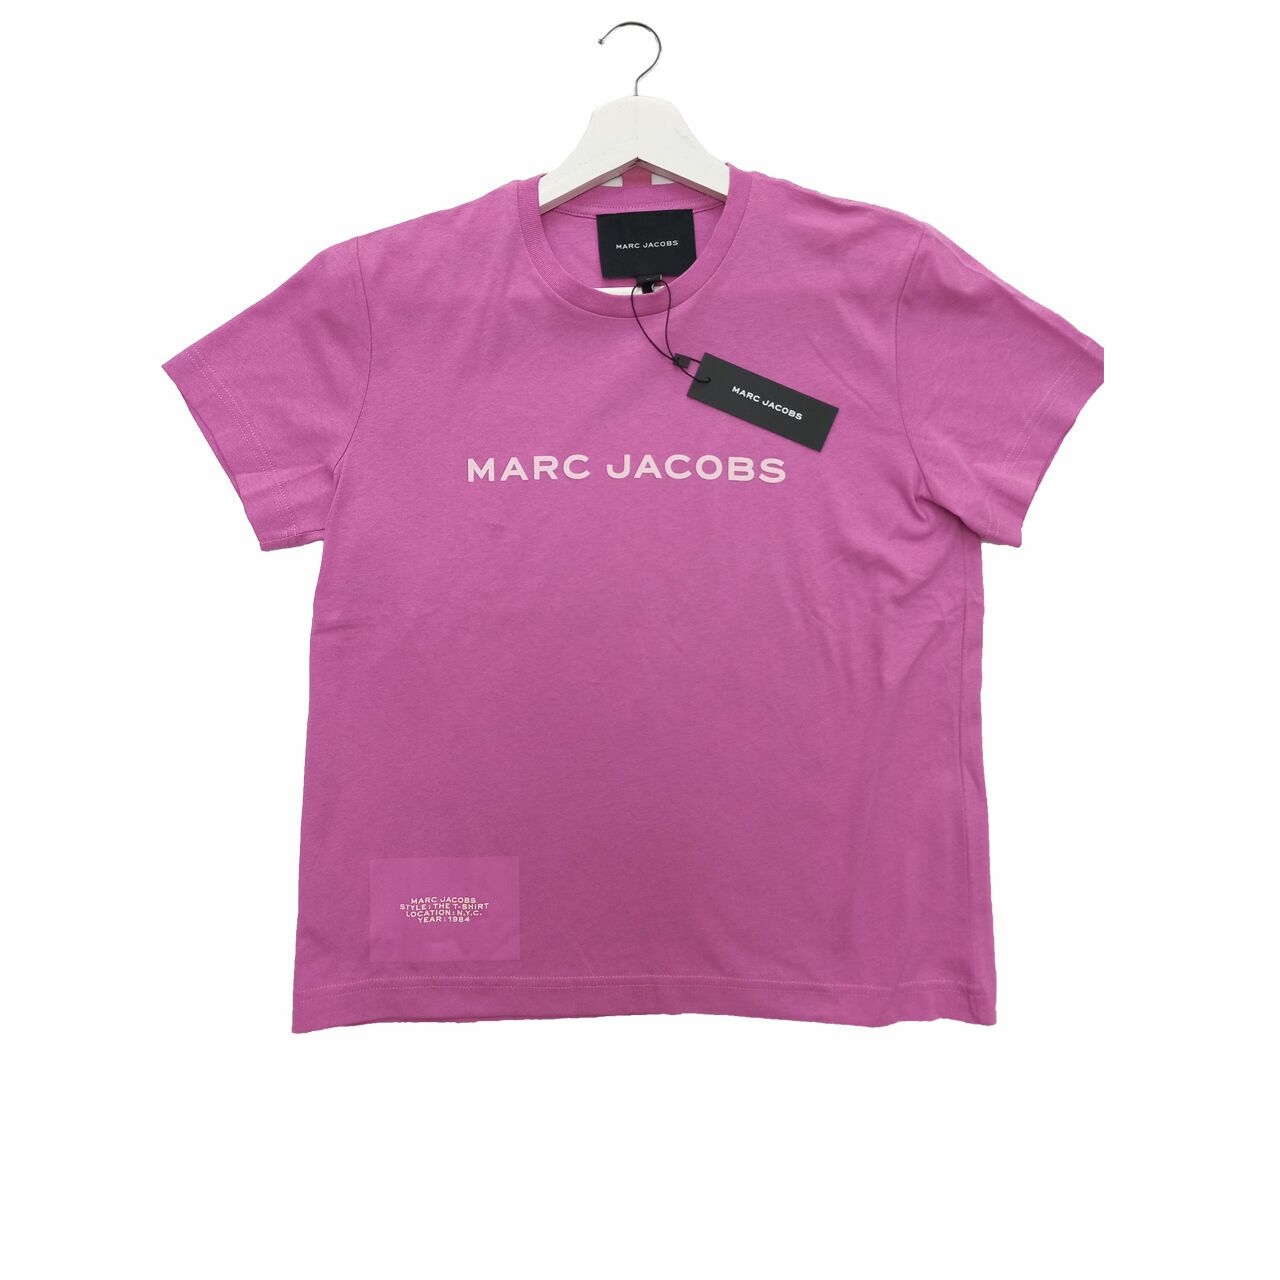 MARC JACOBS Logo Tshirt 